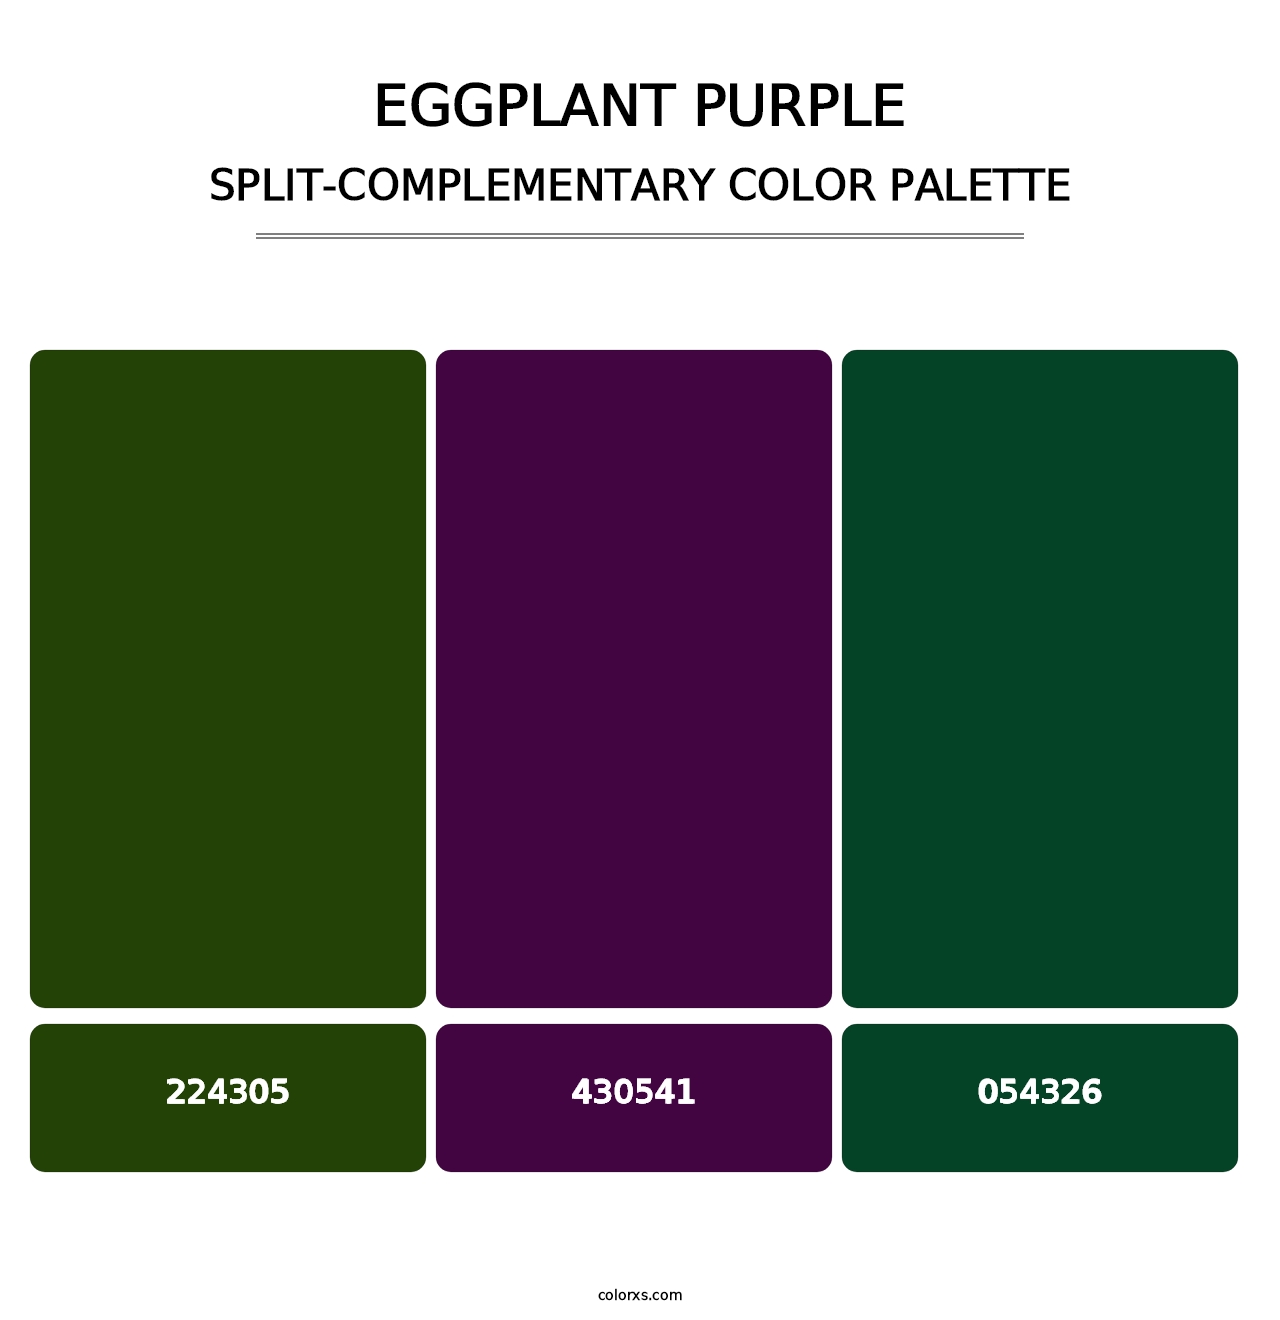 Eggplant Purple - Split-Complementary Color Palette